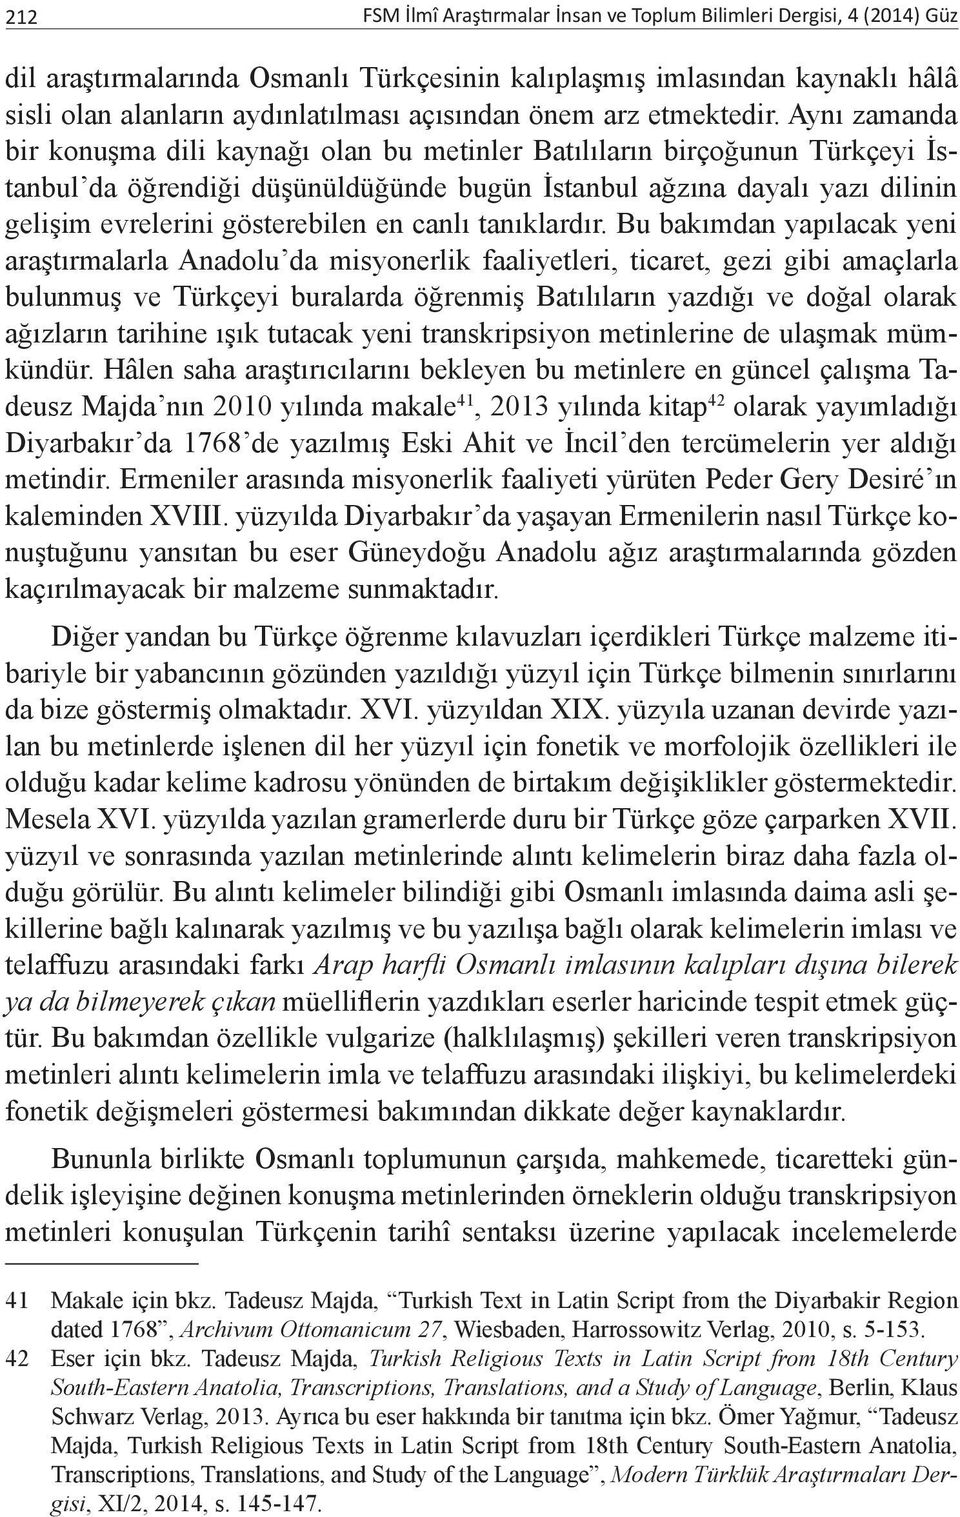 Aynı zamanda bir konuşma dili kaynağı olan bu metinler Batılıların birçoğunun Türkçeyi İstanbul da öğrendiği düşünüldüğünde bugün İstanbul ağzına dayalı yazı dilinin gelişim evrelerini gösterebilen